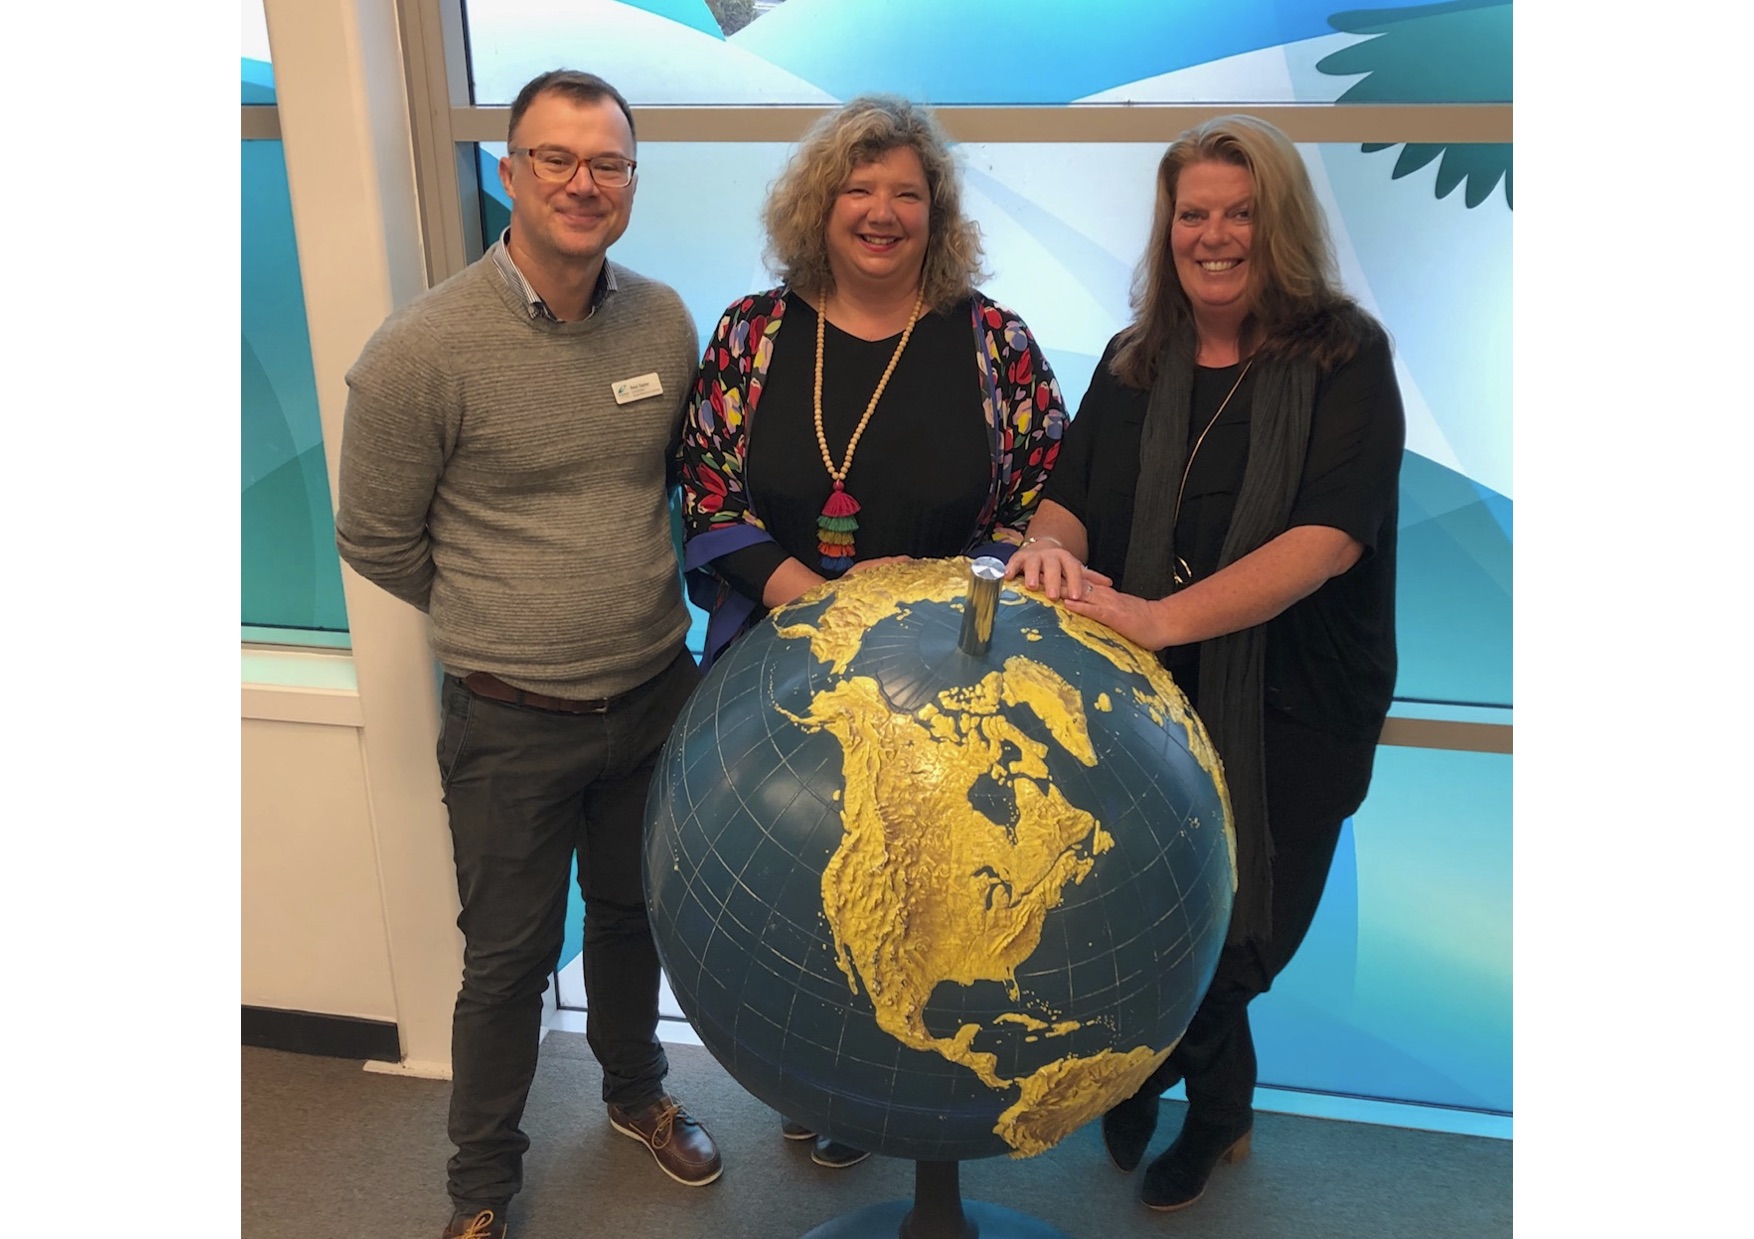 the 3 VRC Coordinators standing around the globe at Homai.